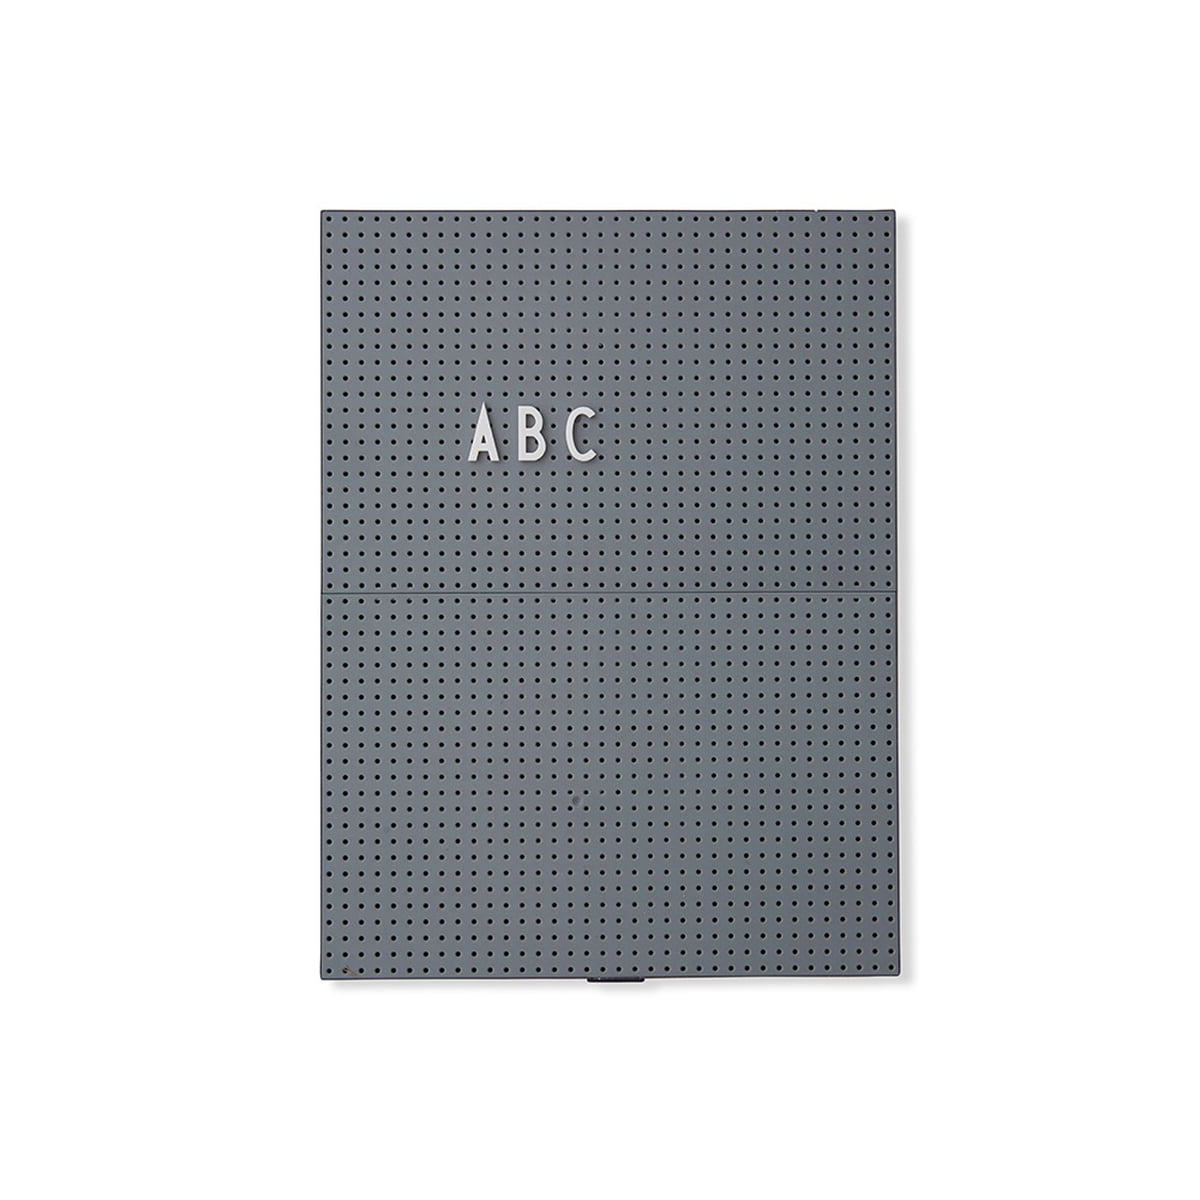 Schwarz - Mattschwarz lackierter Edelstahl Erleichtert das Bewegen Zeigen Sie Ihr Letter Board schön auf dem Tisch oder in einem Regal an Design Letters Halterung/Ständer für A4 & A3 Message Board 